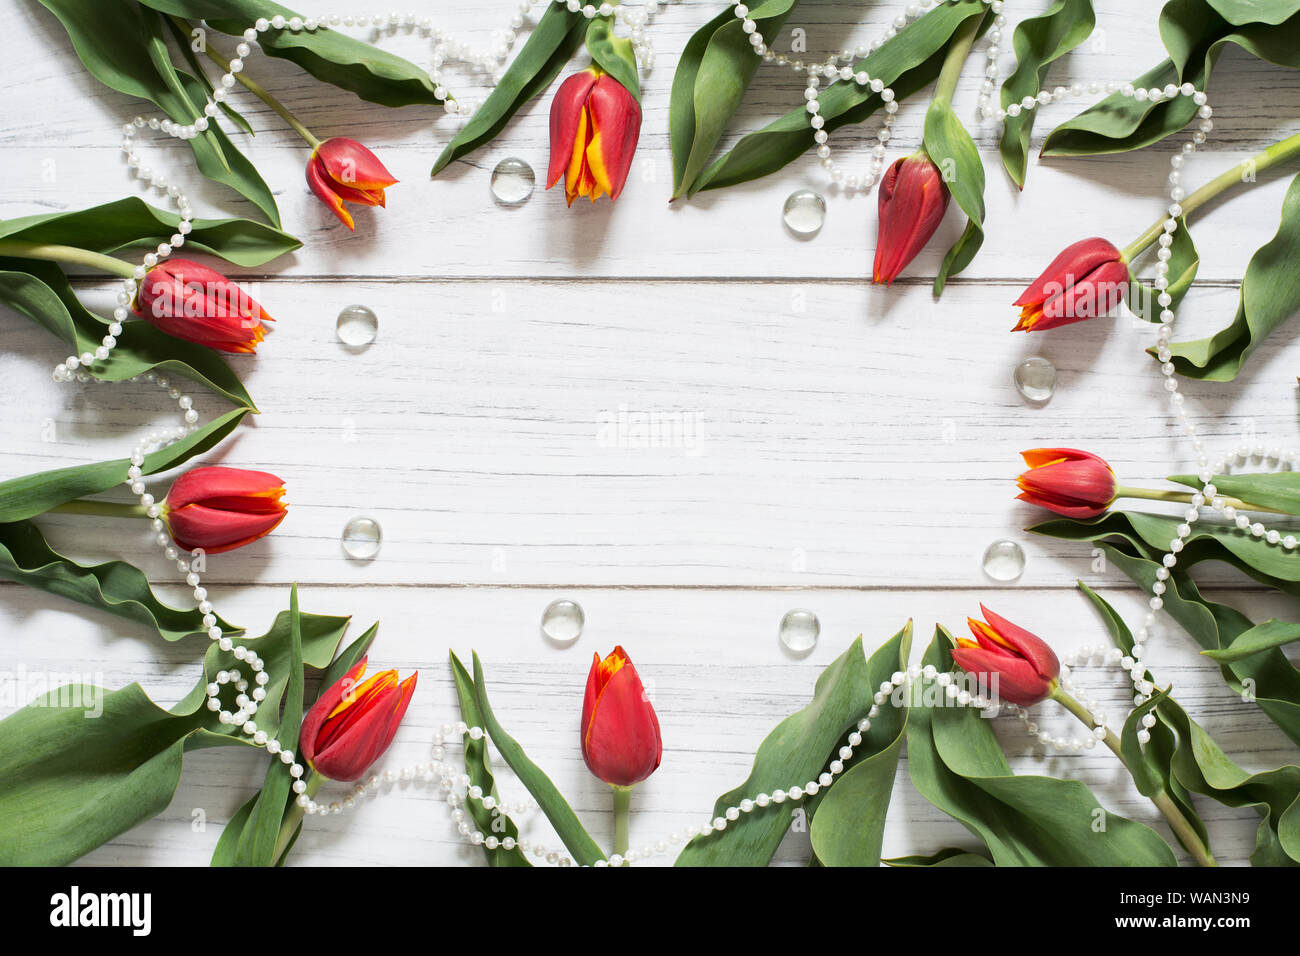 Feder Grenze mit roten Tulpen, weiße Perle Kette und Glassteinen in einem Kreis auf weißem Holz- Hintergrund angeordnet Stockfoto